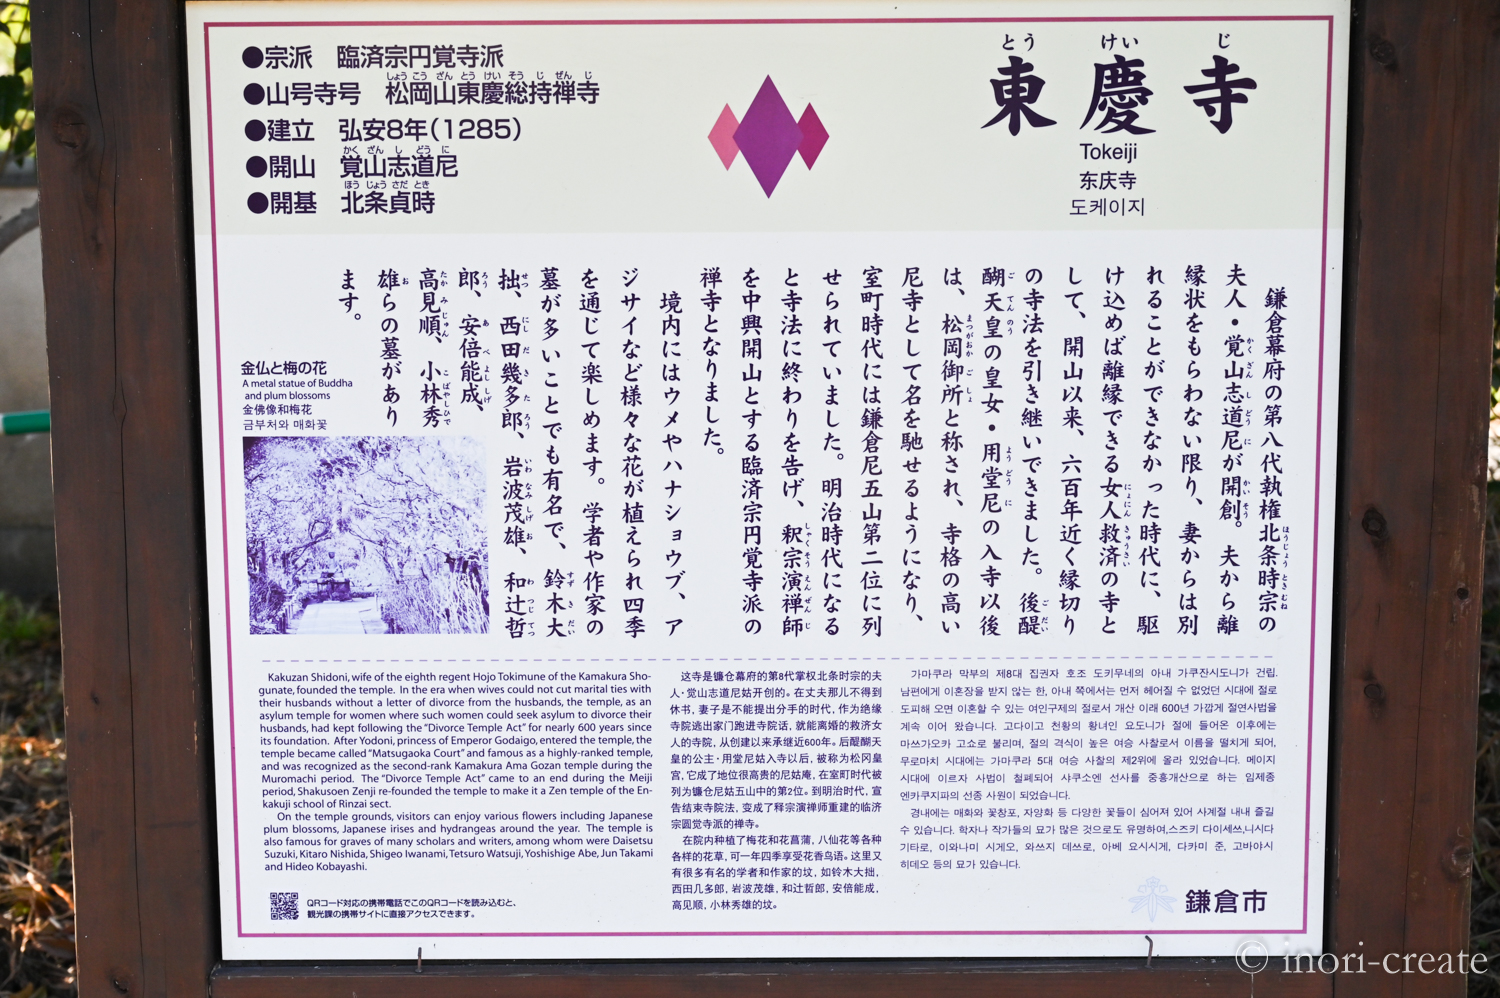 鎌倉東慶寺・山門前の案内板。女性側から離縁することが出来なかった中・近世まで、女人救済の「縁切り寺」としてその名を知られていました。